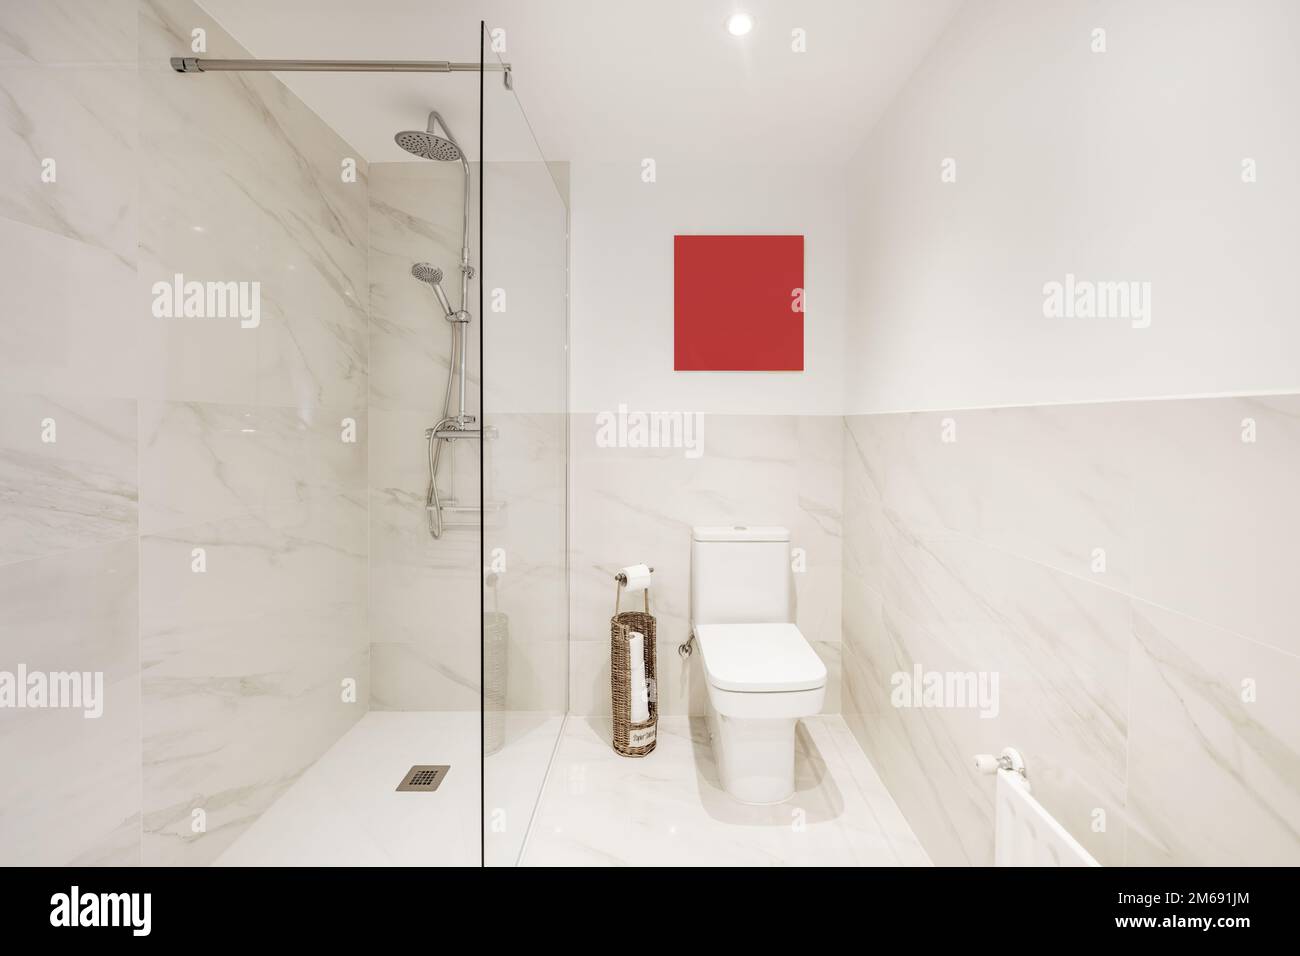 Salle de bains avec toilettes en porcelaine blanche, miroir avec cadre assorti, carrelage en marbre et cabine de douche à parois de verre Banque D'Images